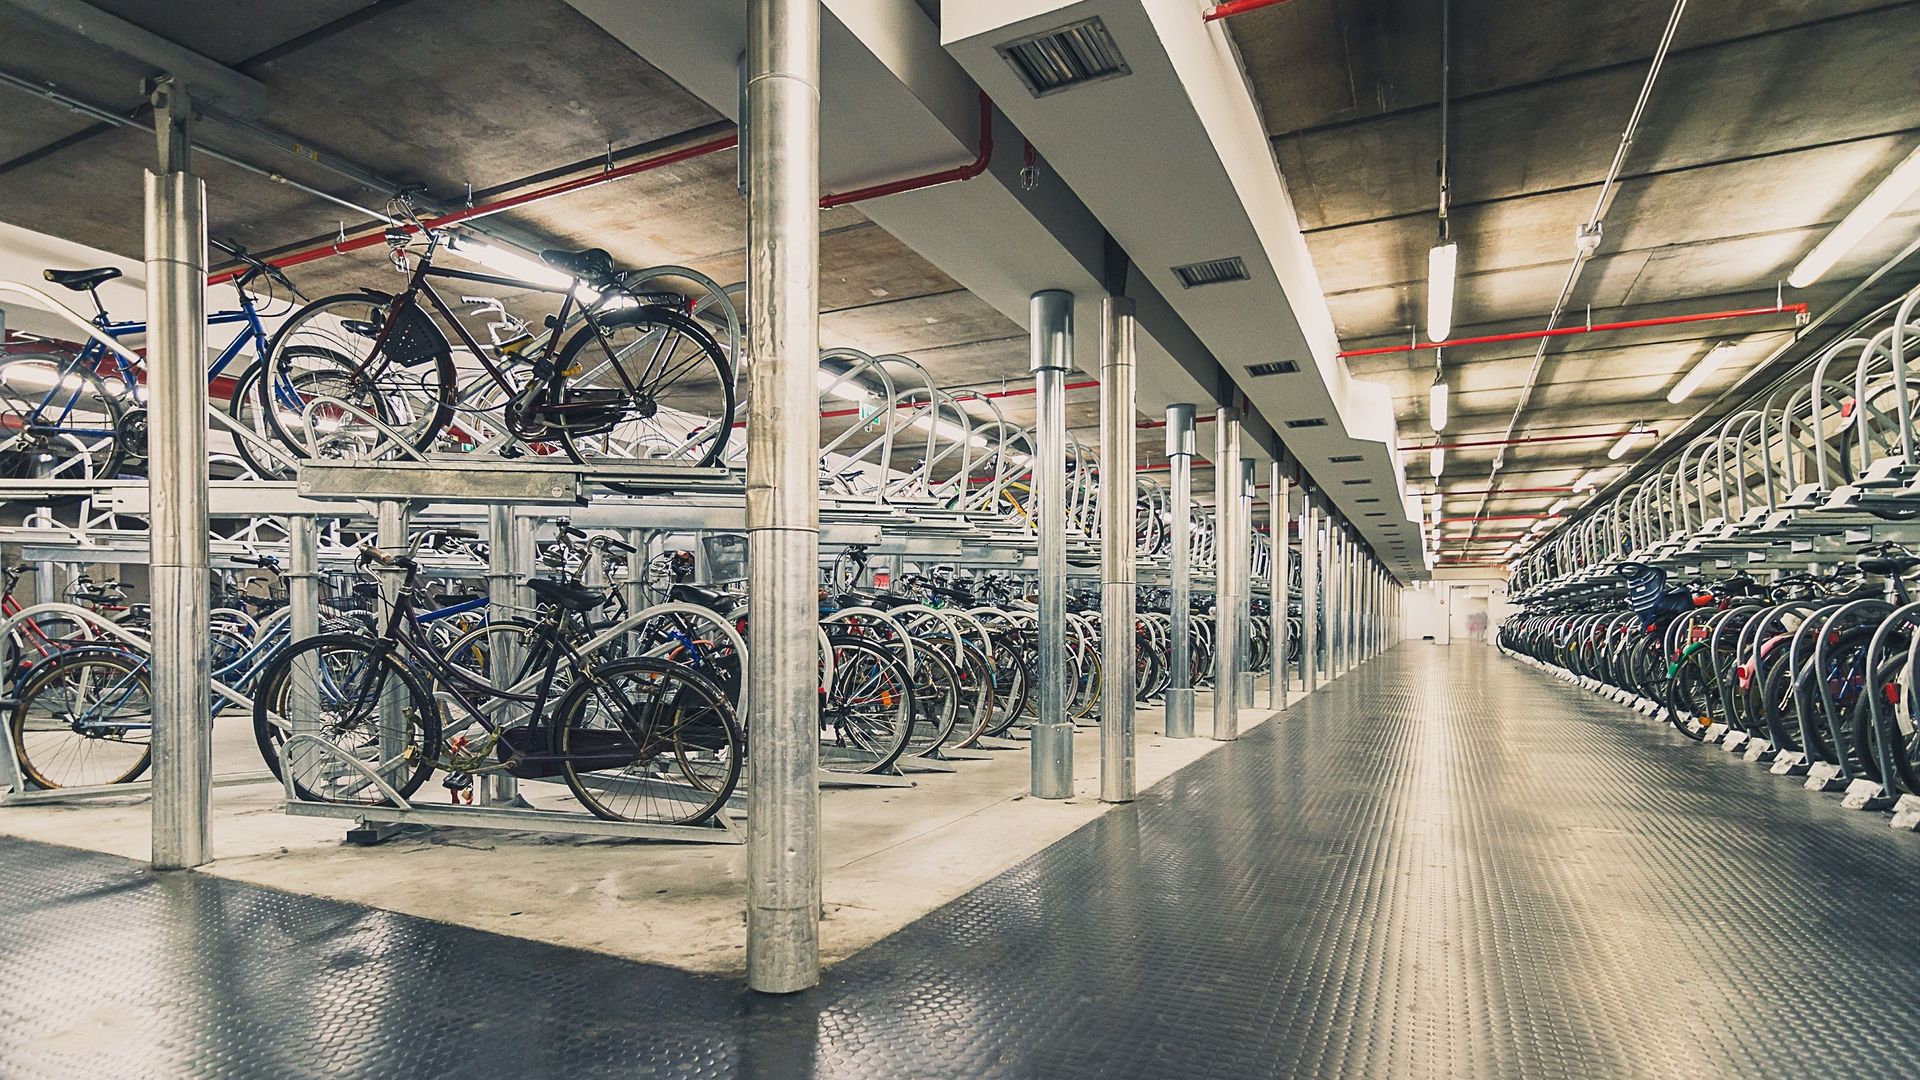 Et si demain tous les bâtiments disposaient d'espaces de stationnement pour les vélos ?